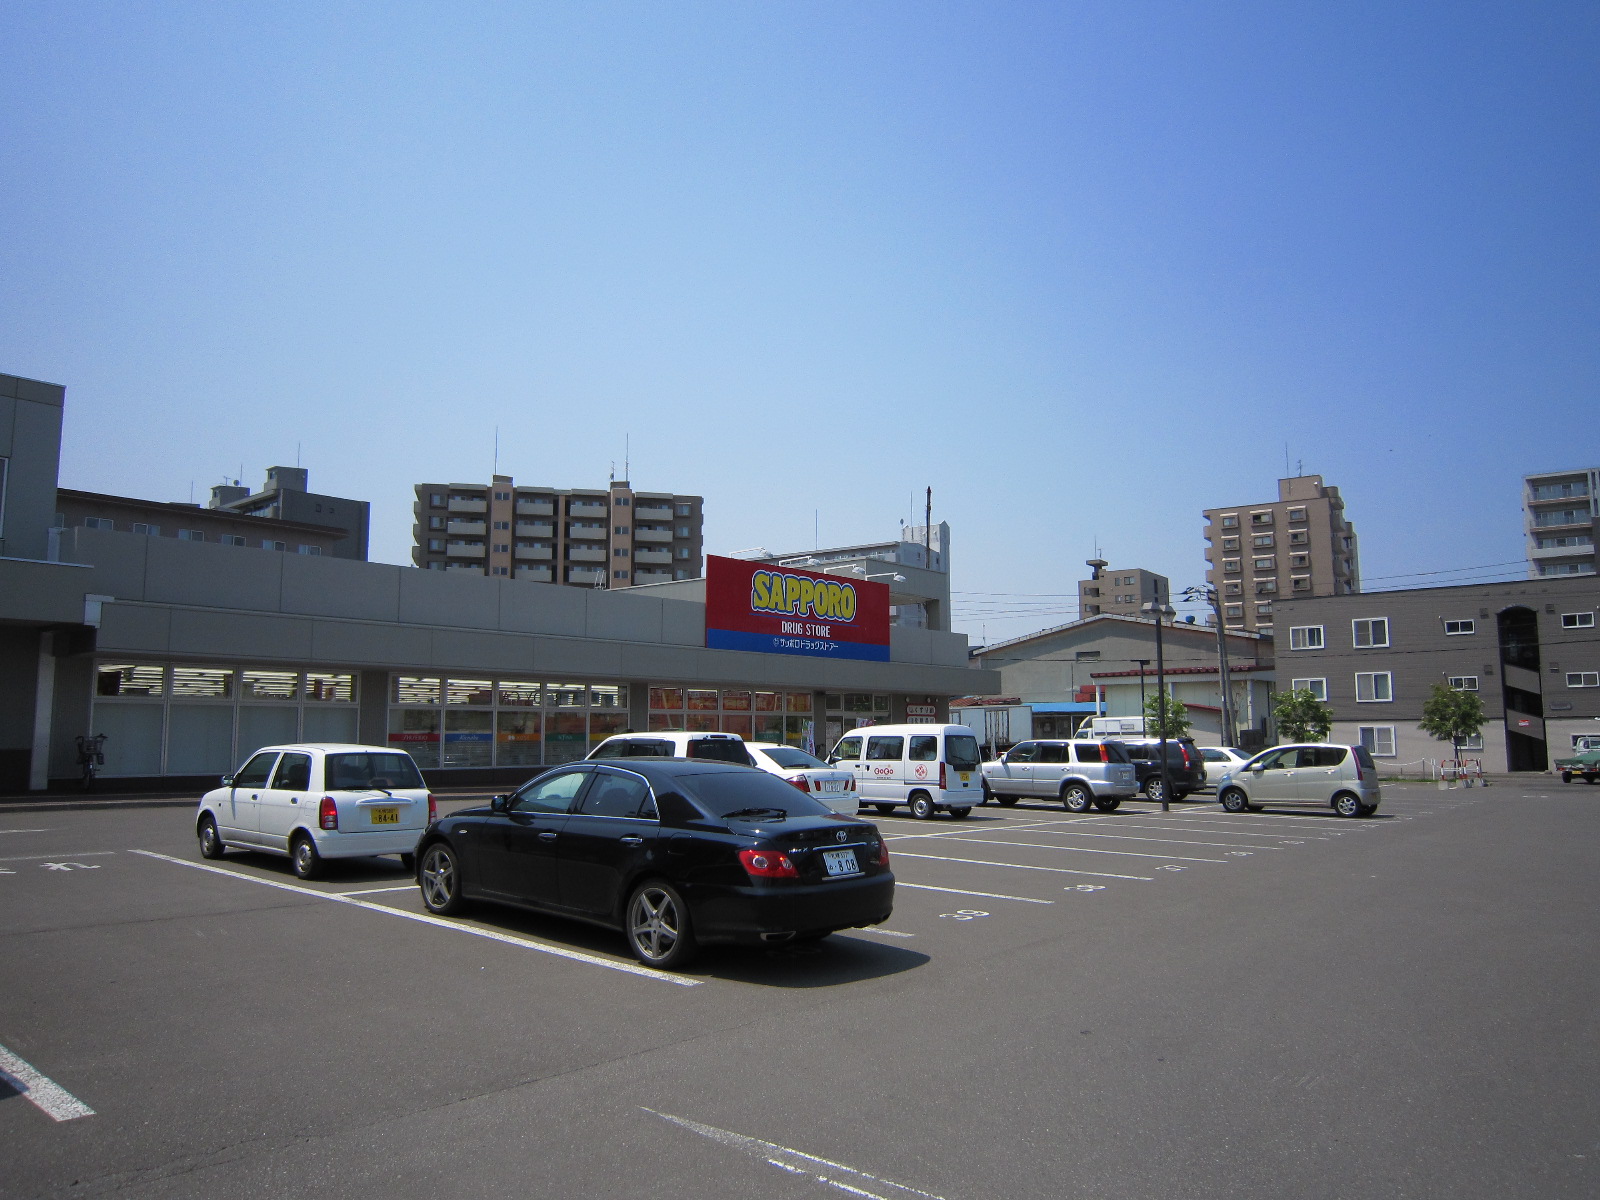 Dorakkusutoa. Sapporo drugstores Higashisapporo shop 970m until (drugstore)